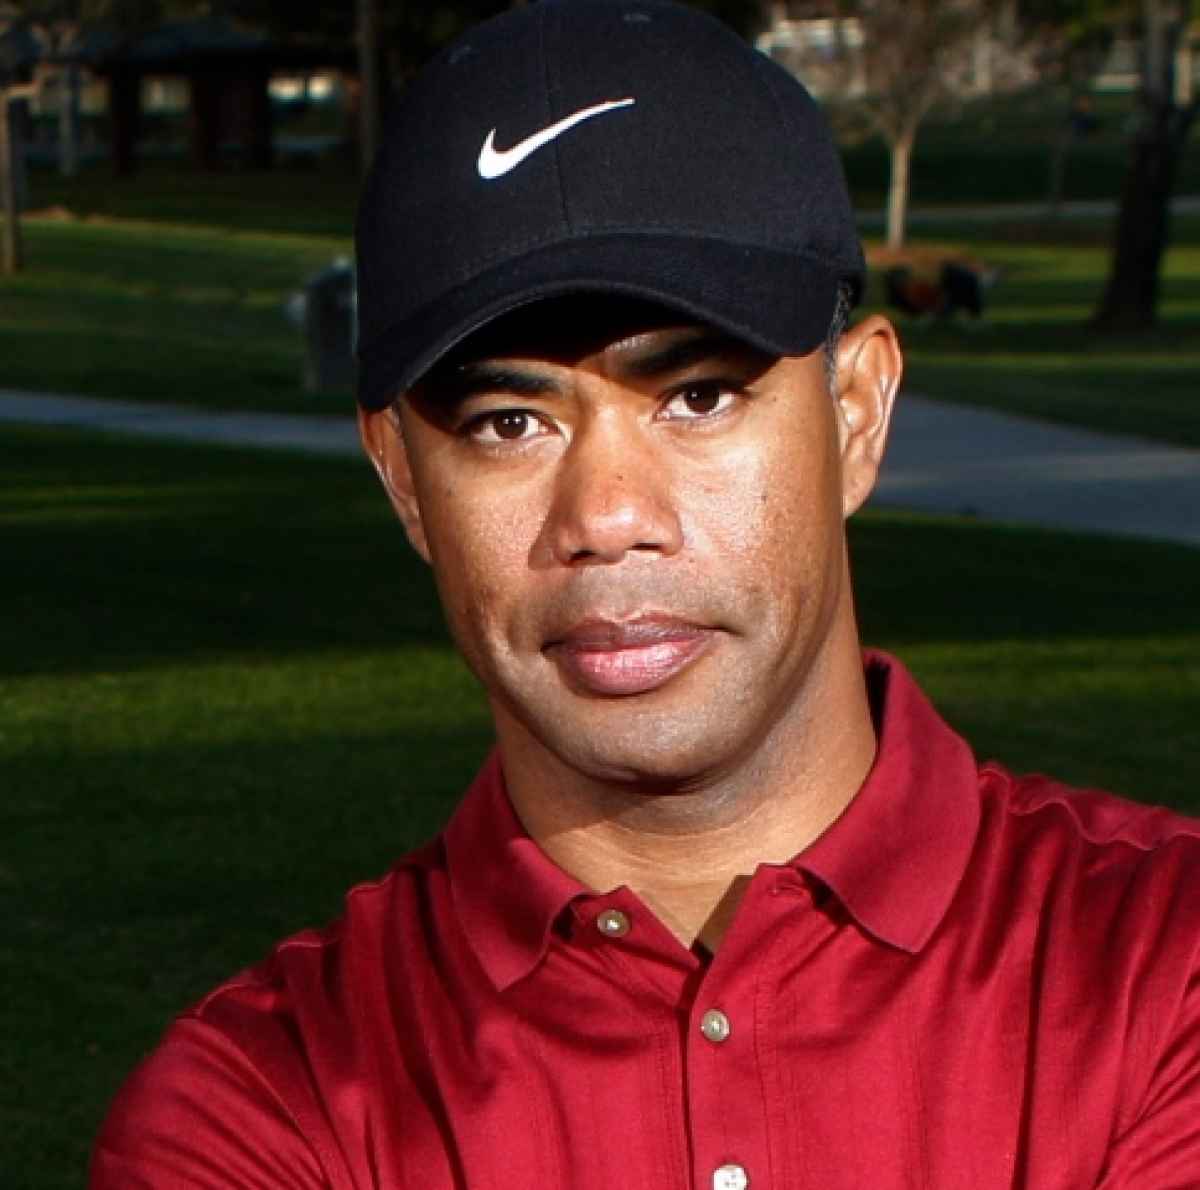 Tiger Woods impersonator arrested for sexting harassment GolfMagic